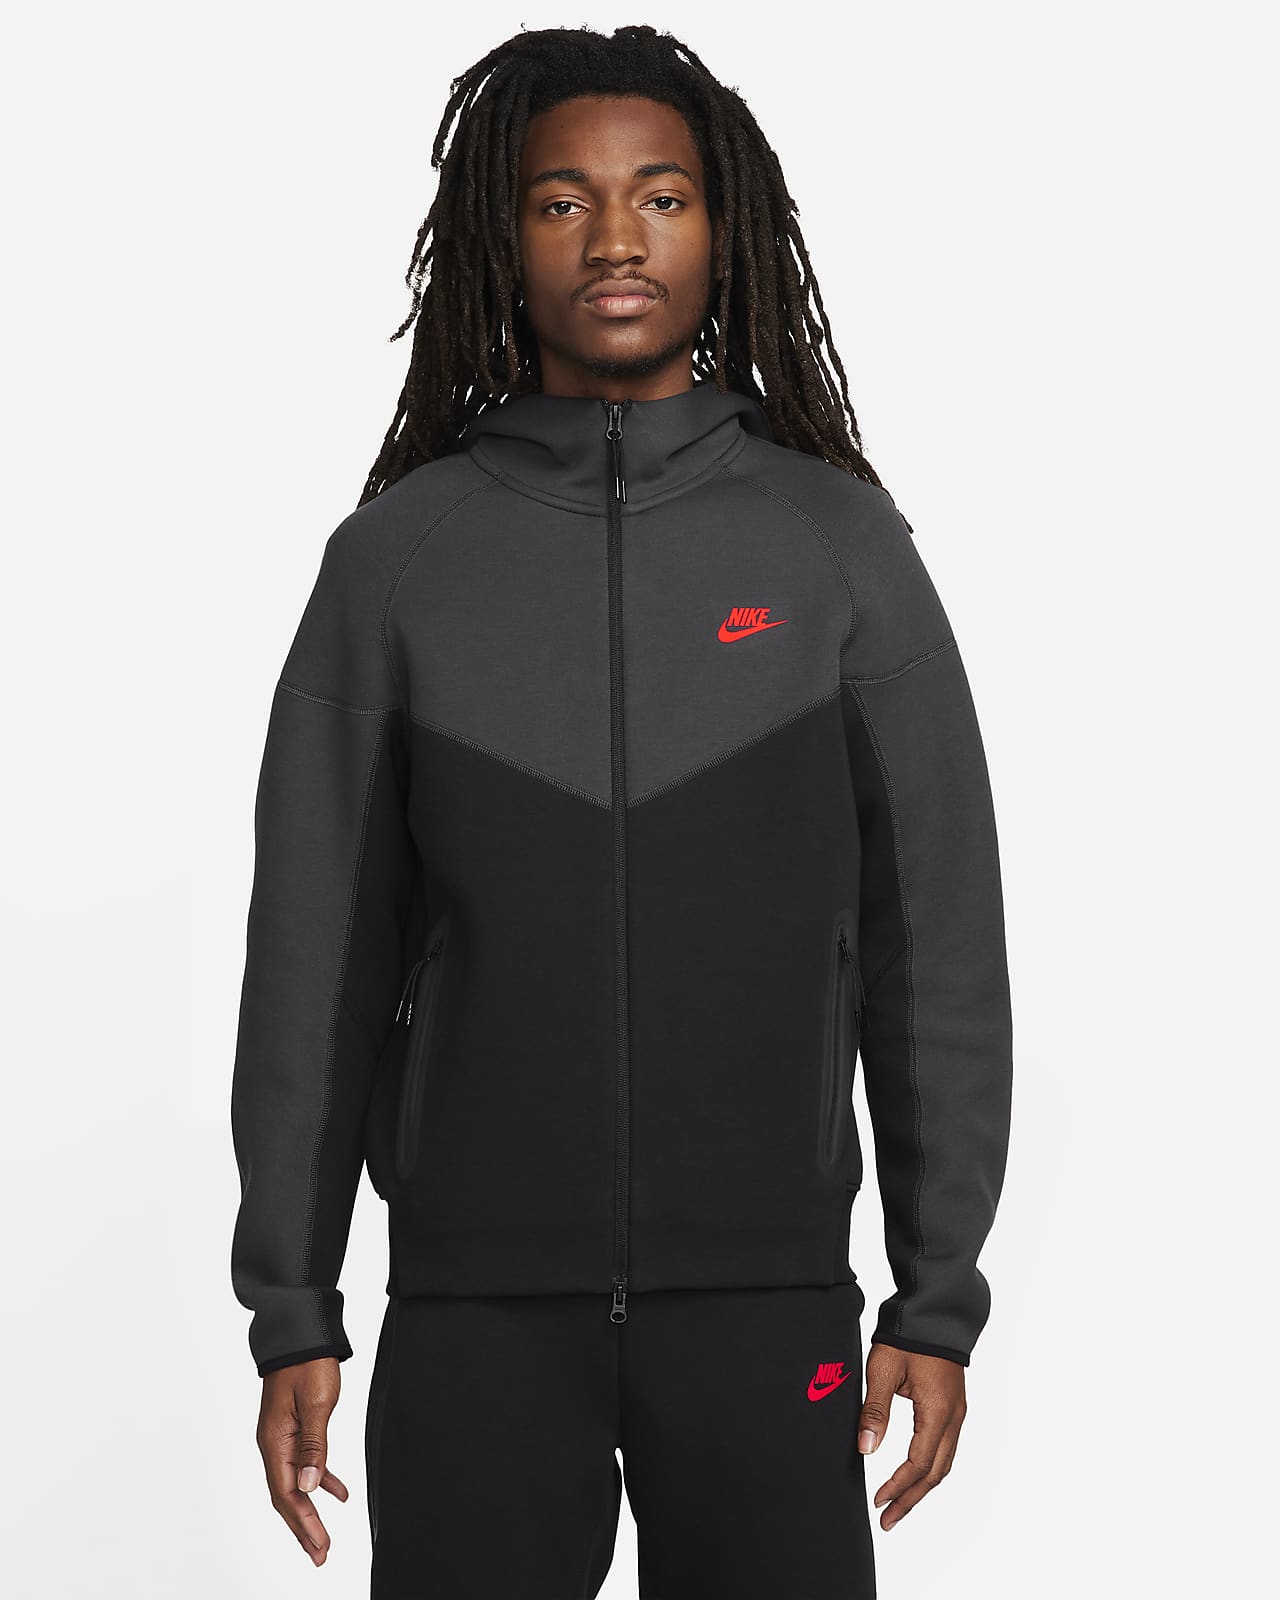 Ανδρική μπλούζα με κουκούλα και φερμουάρ Nike Sportswear Tech Fleece Windrunner